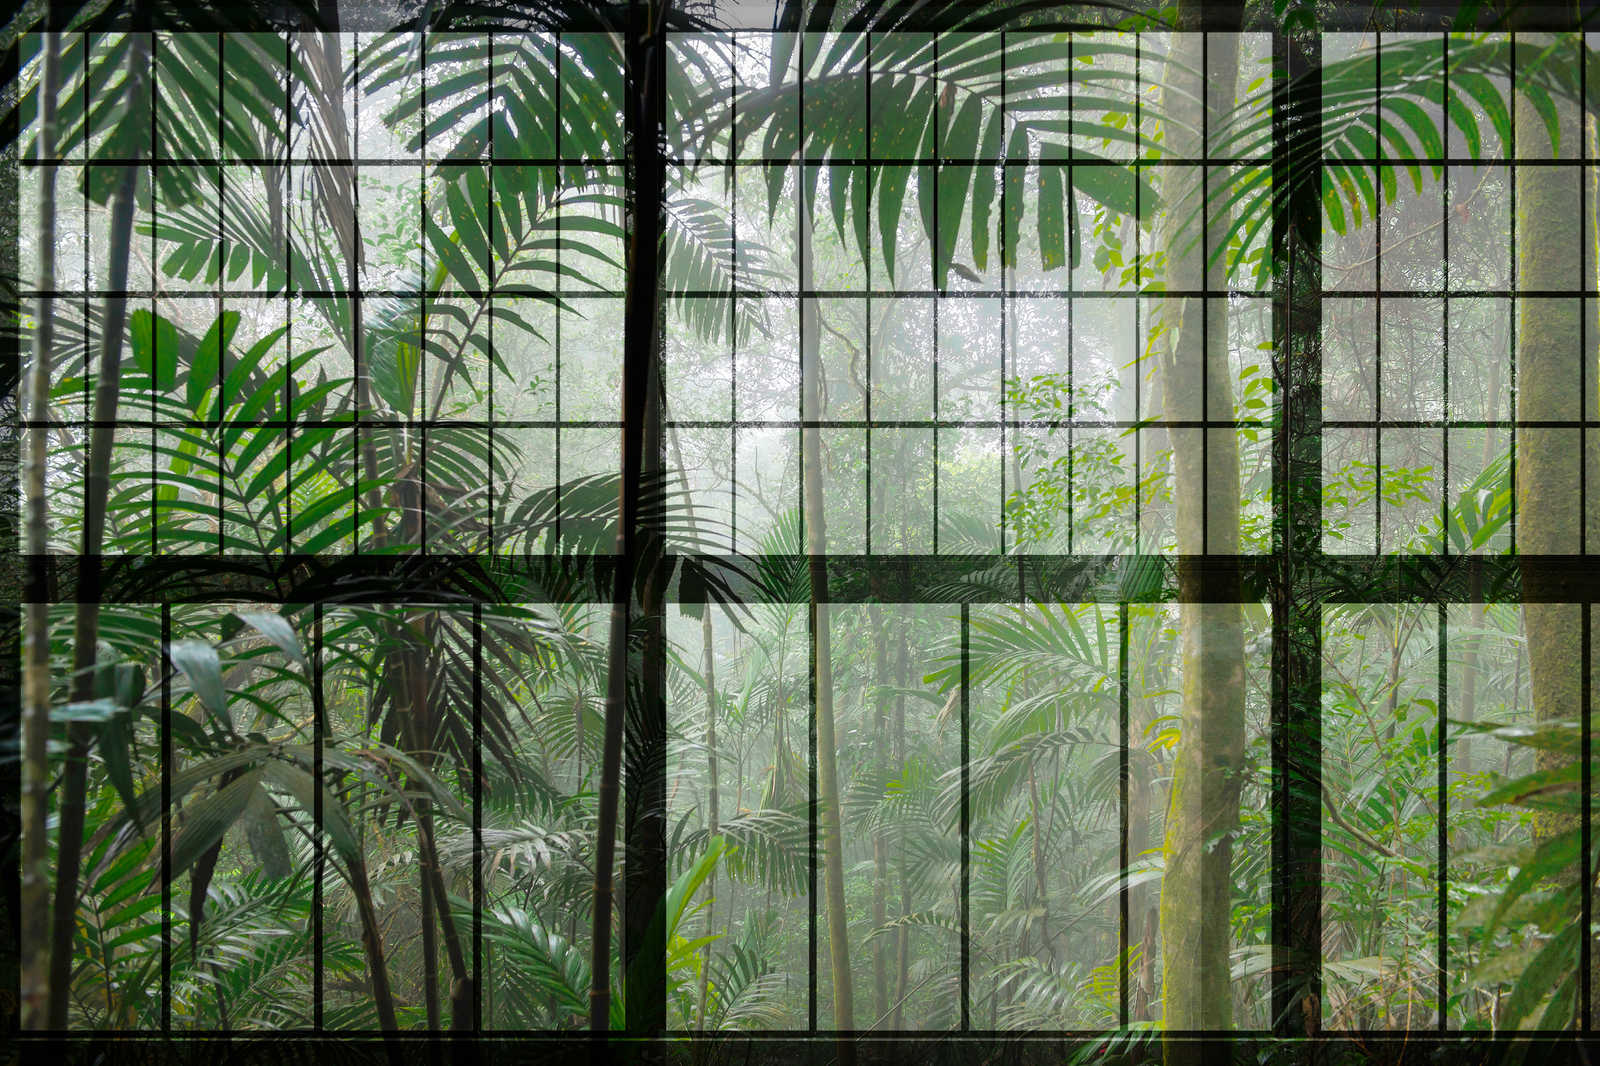             Rainforest 1 - Quadro su tela con vista sulla giungla dalla finestra del loft - 0,90 m x 0,60 m
        